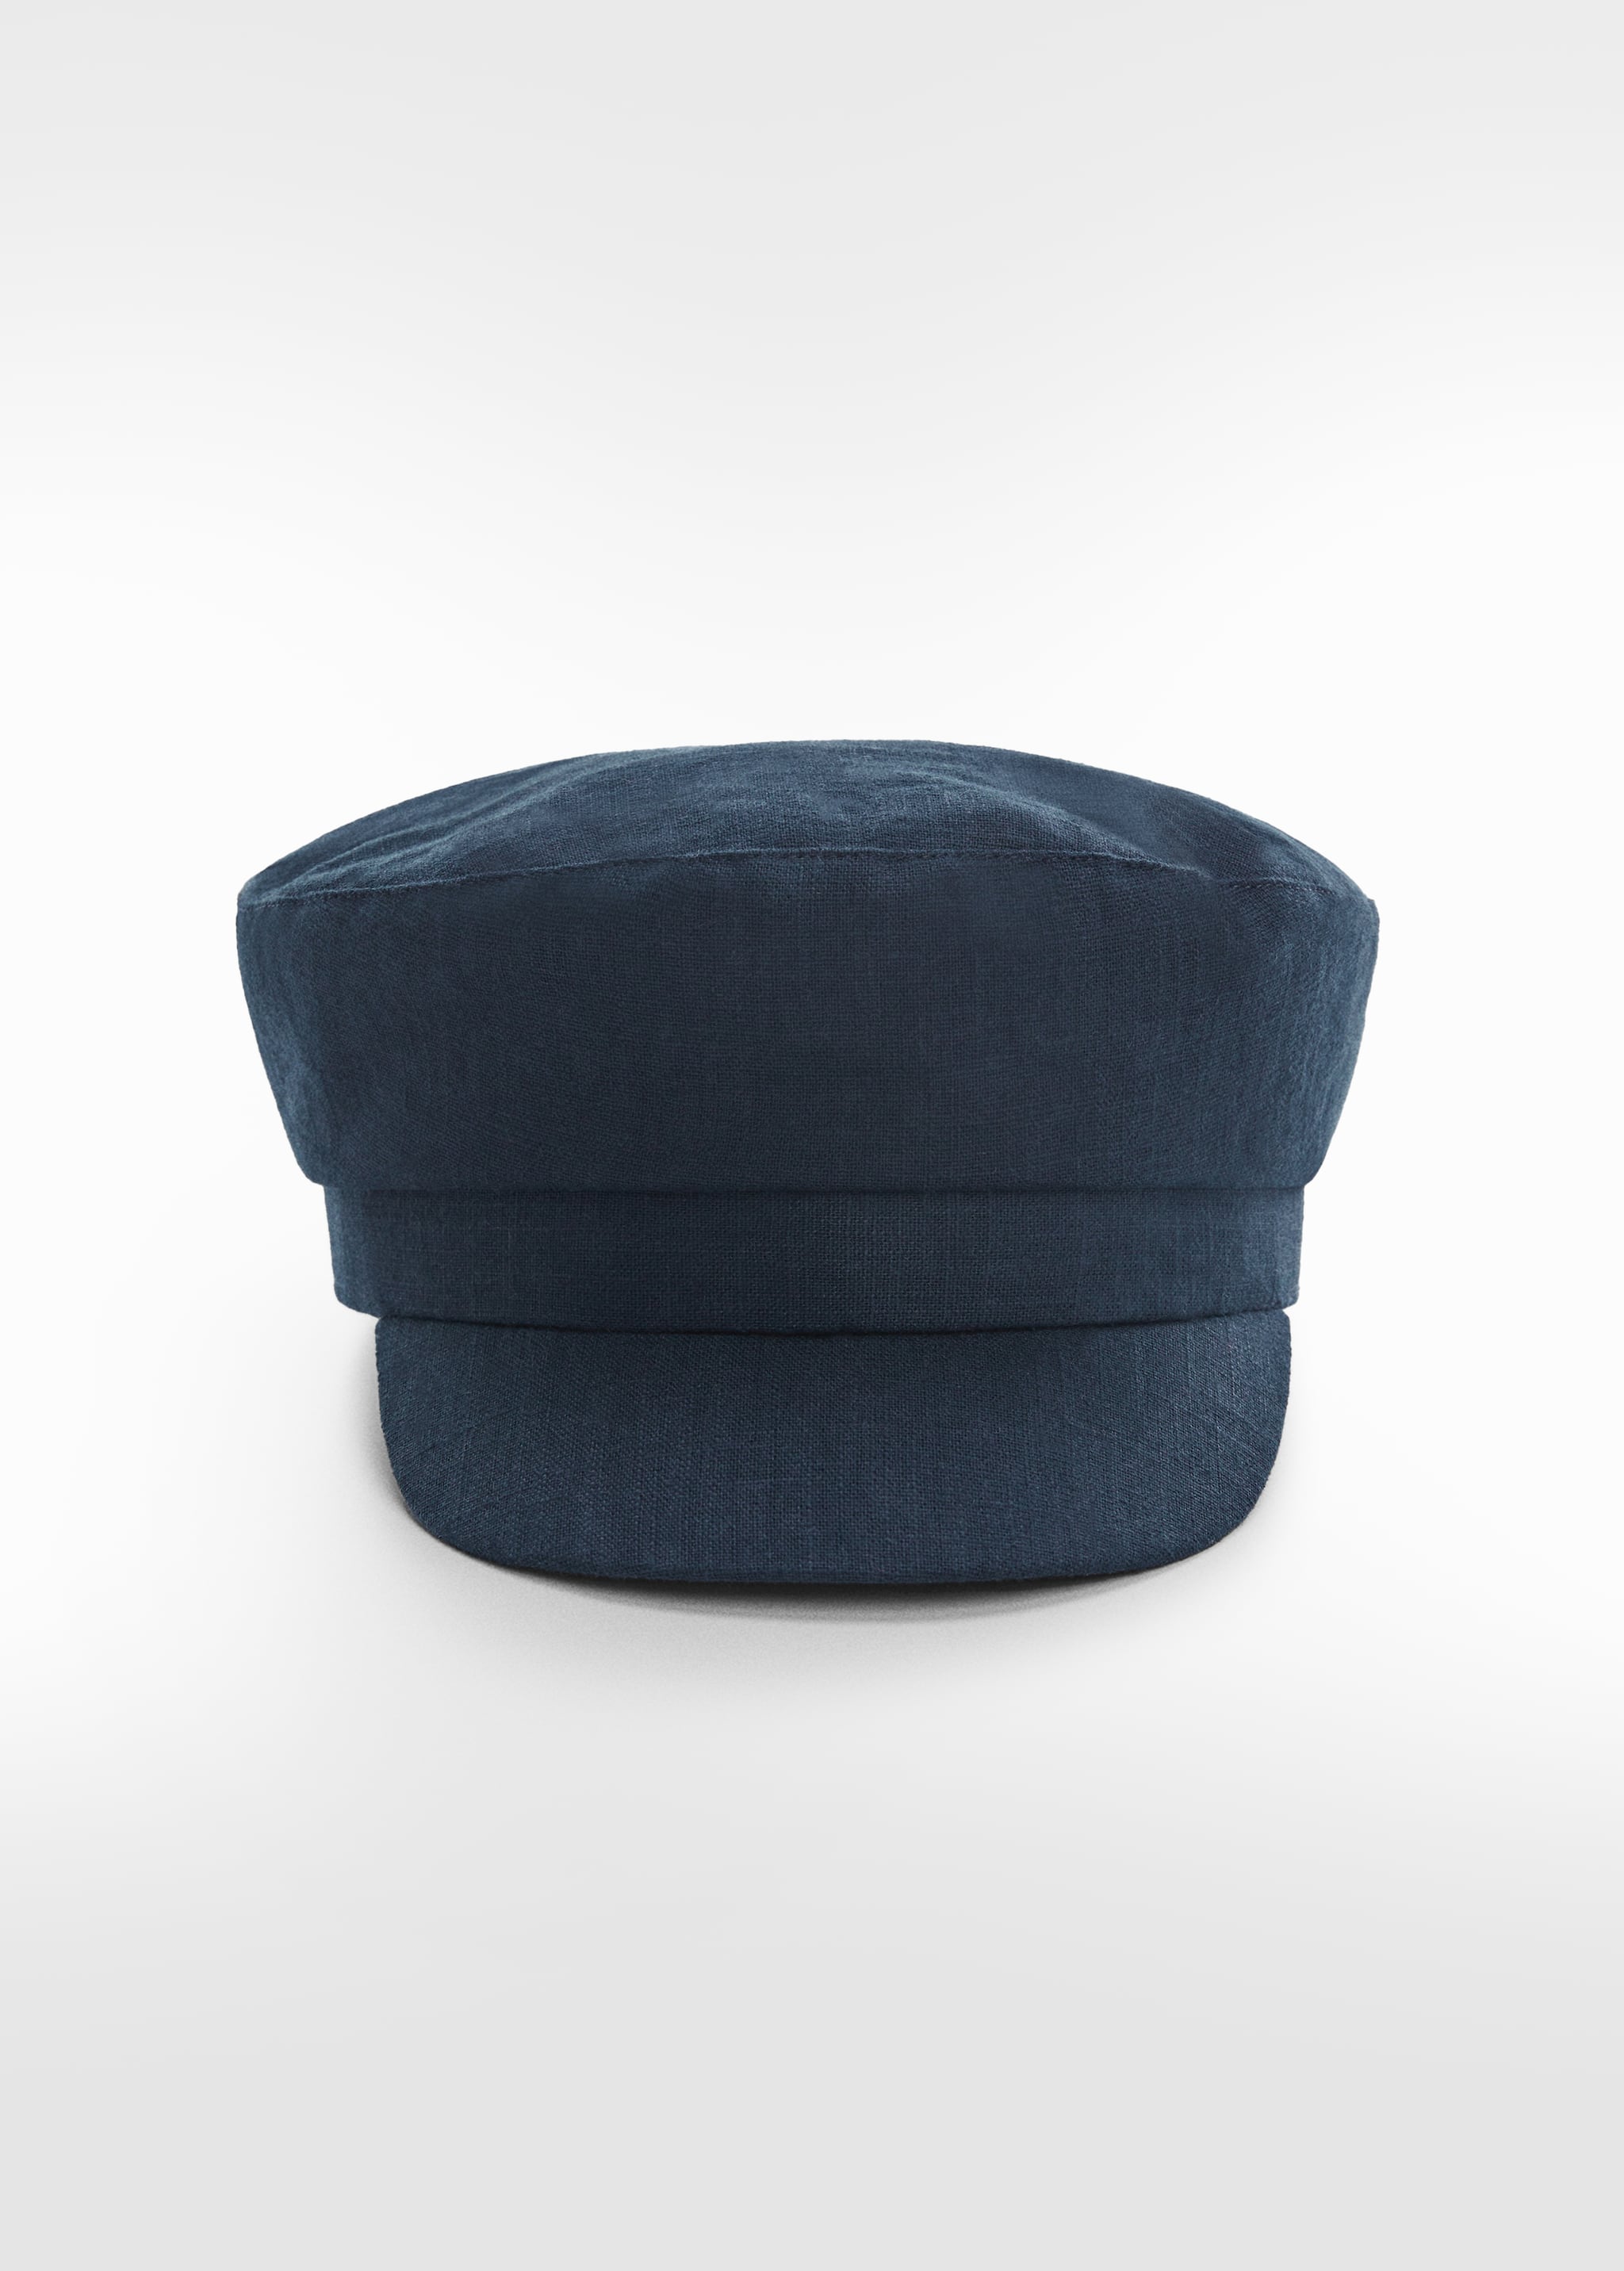 Cap with visor - Medium plane